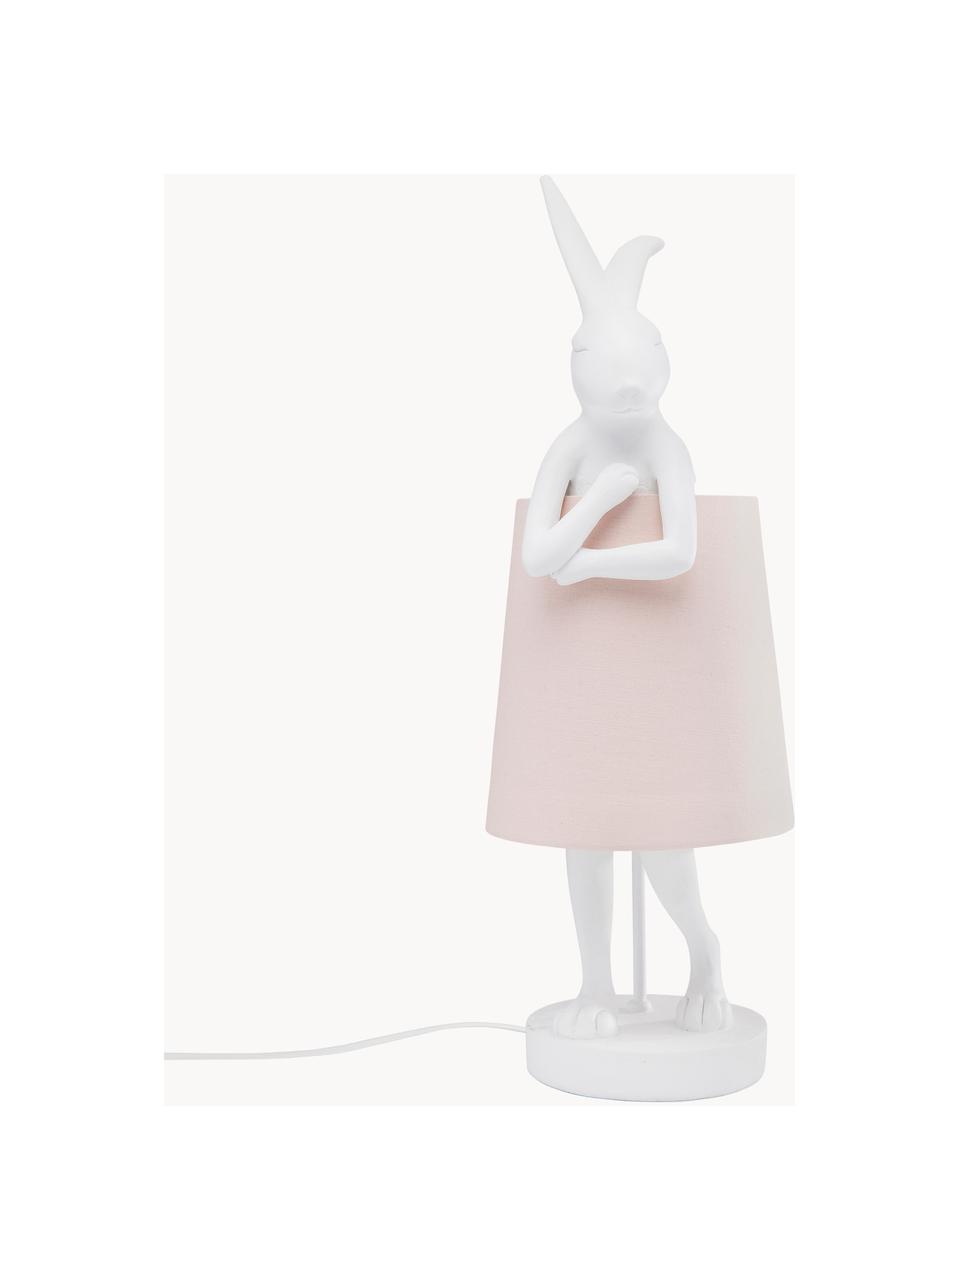 Große Design Tischlampe Rabbit, Lampenschirm: Leinen, Lampenfuß: Polyresin, Stange: Stahl, pulverbeschichtet, Weiß, Hellrosa, Ø 23 x H 68 cm